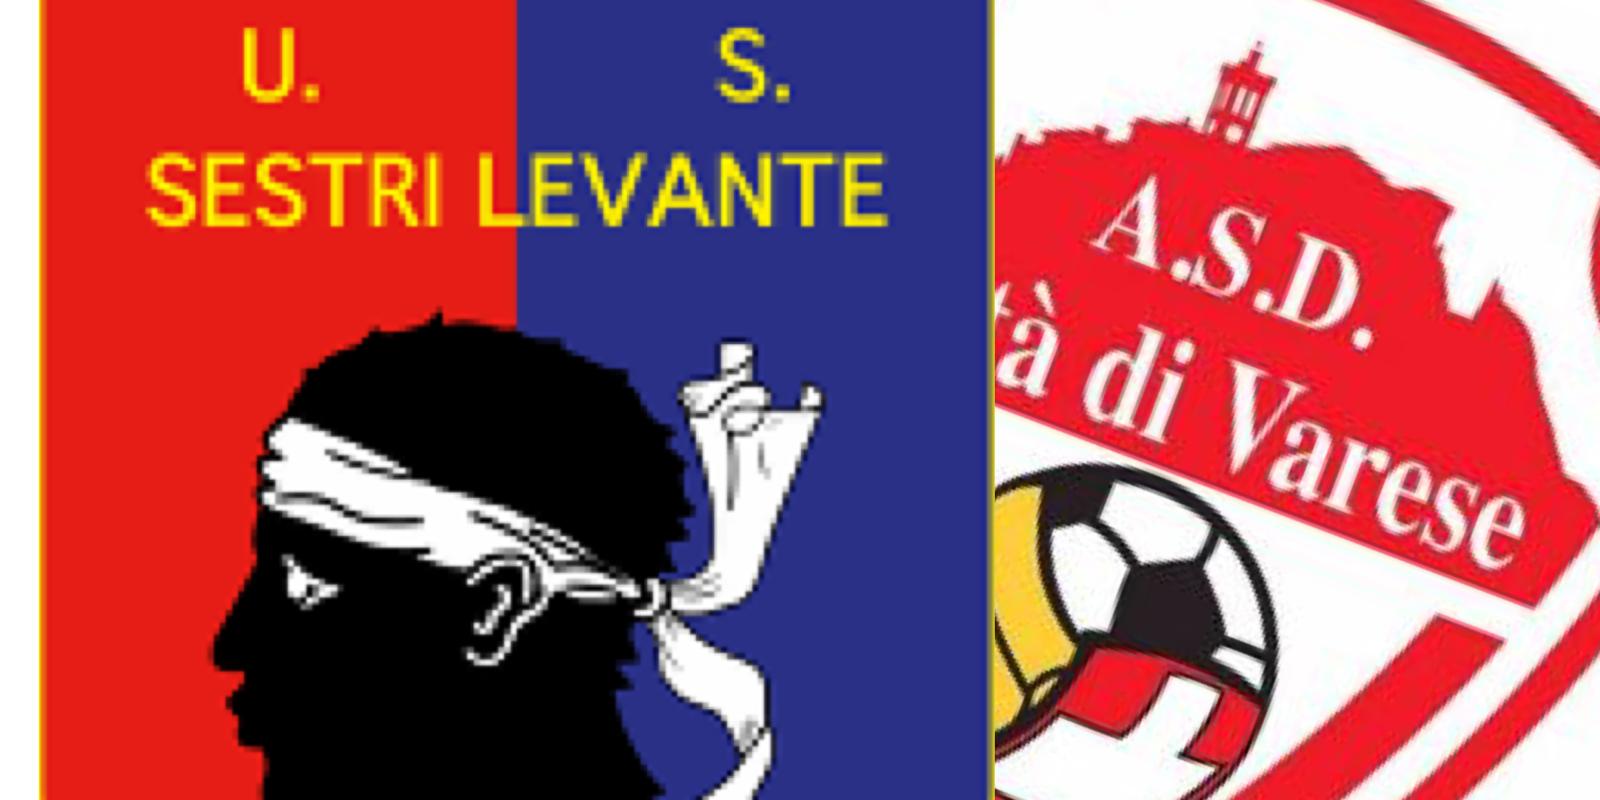 Serie D: Sestri Levante-Varese 1-0 la cronaca della partita